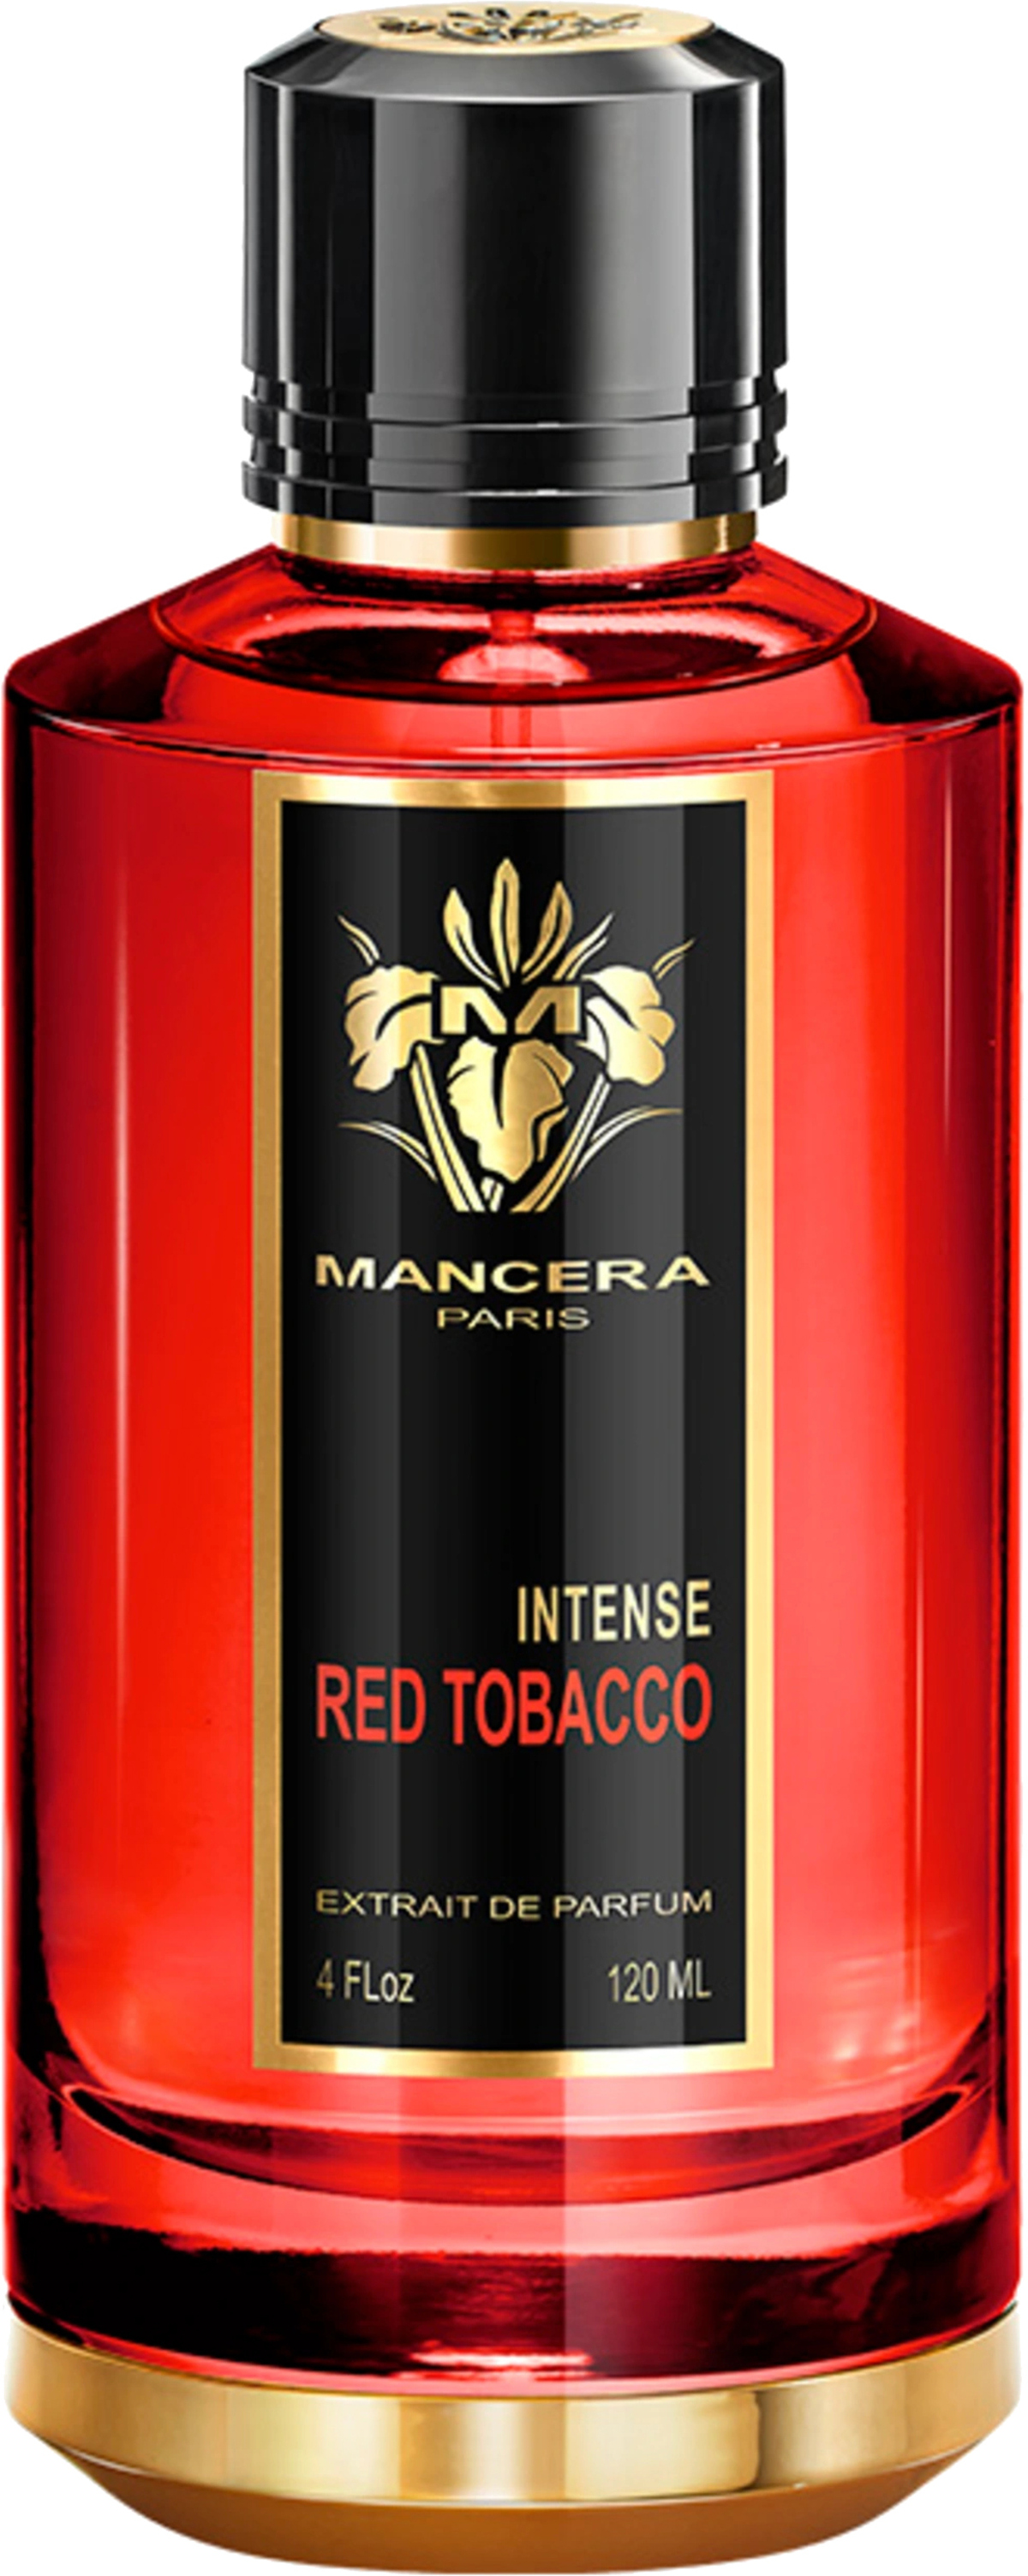 Intense Red Tobacco (Mancera)